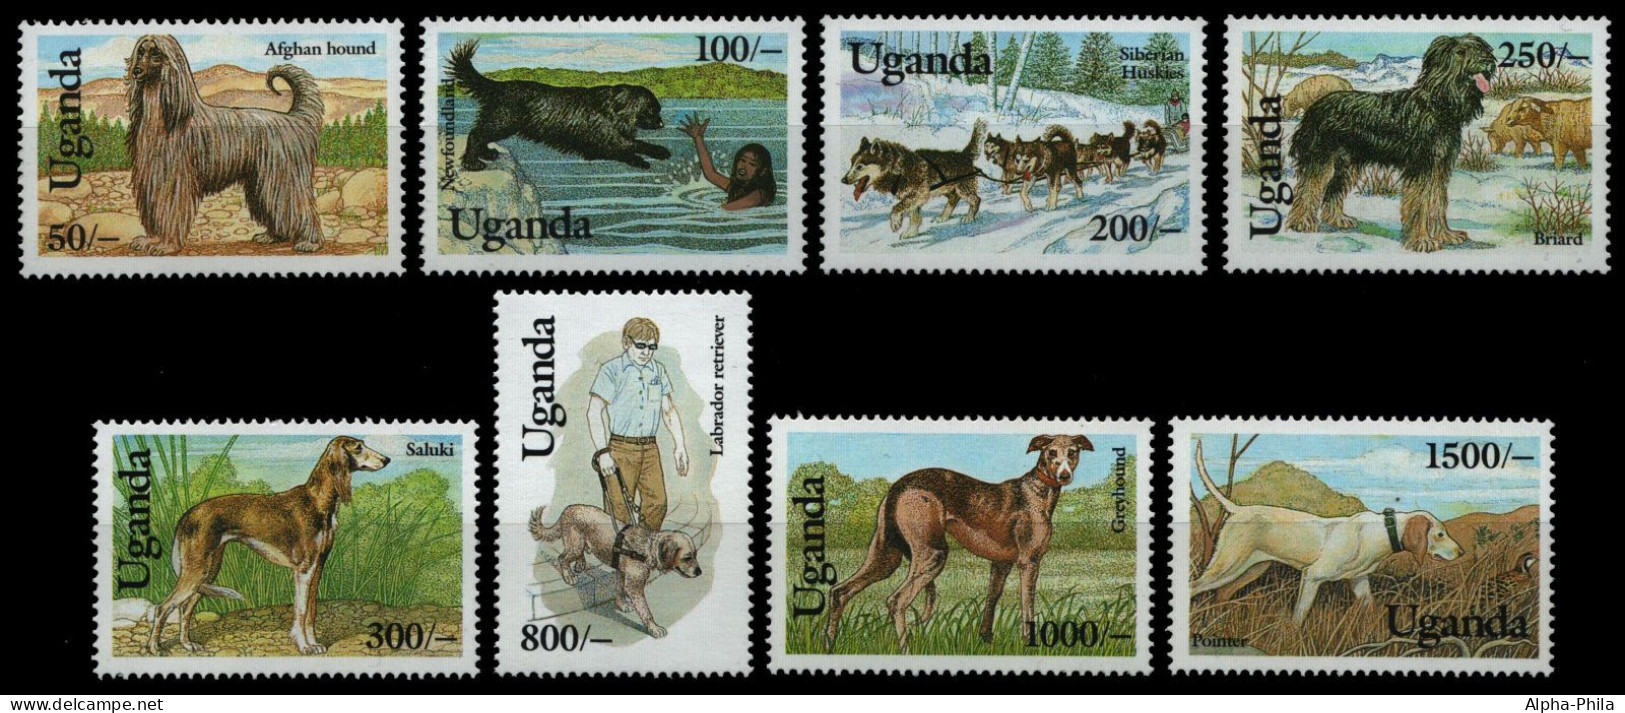 Uganda 1993 - Mi-Nr. 1212-1219 ** - MNH - Hunde / Dogs - Ouganda (1962-...)